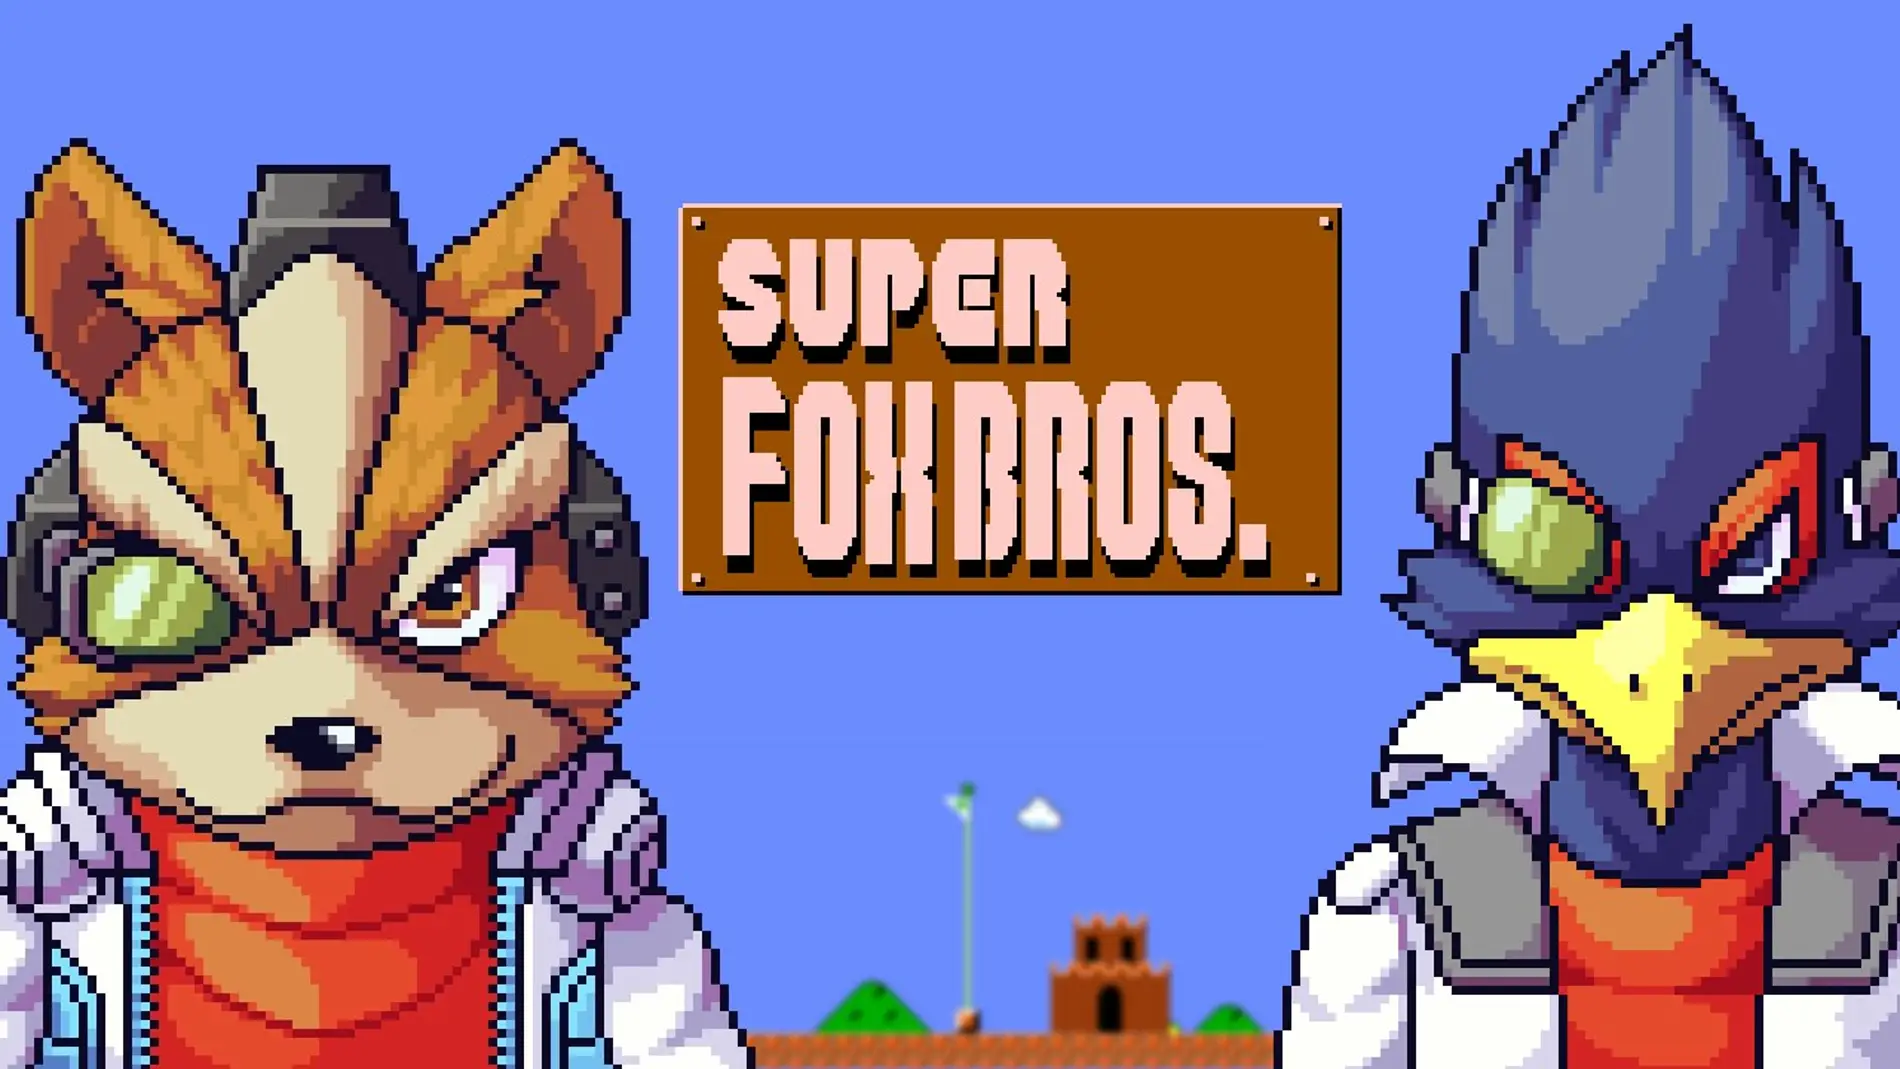 Super Fox Bros.